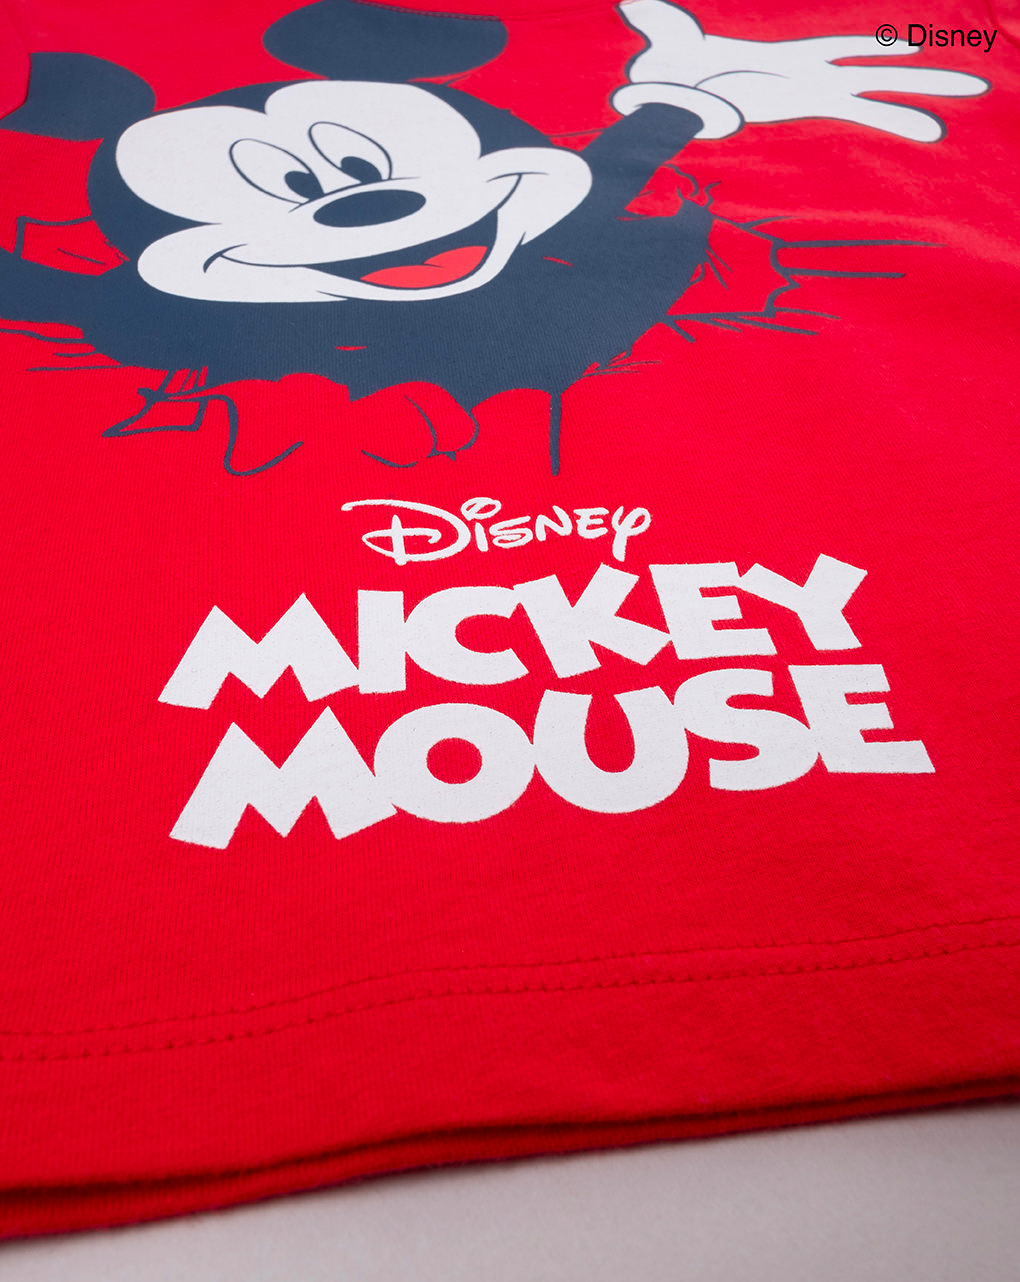 Camiseta niño roja mickey mouse - Prénatal